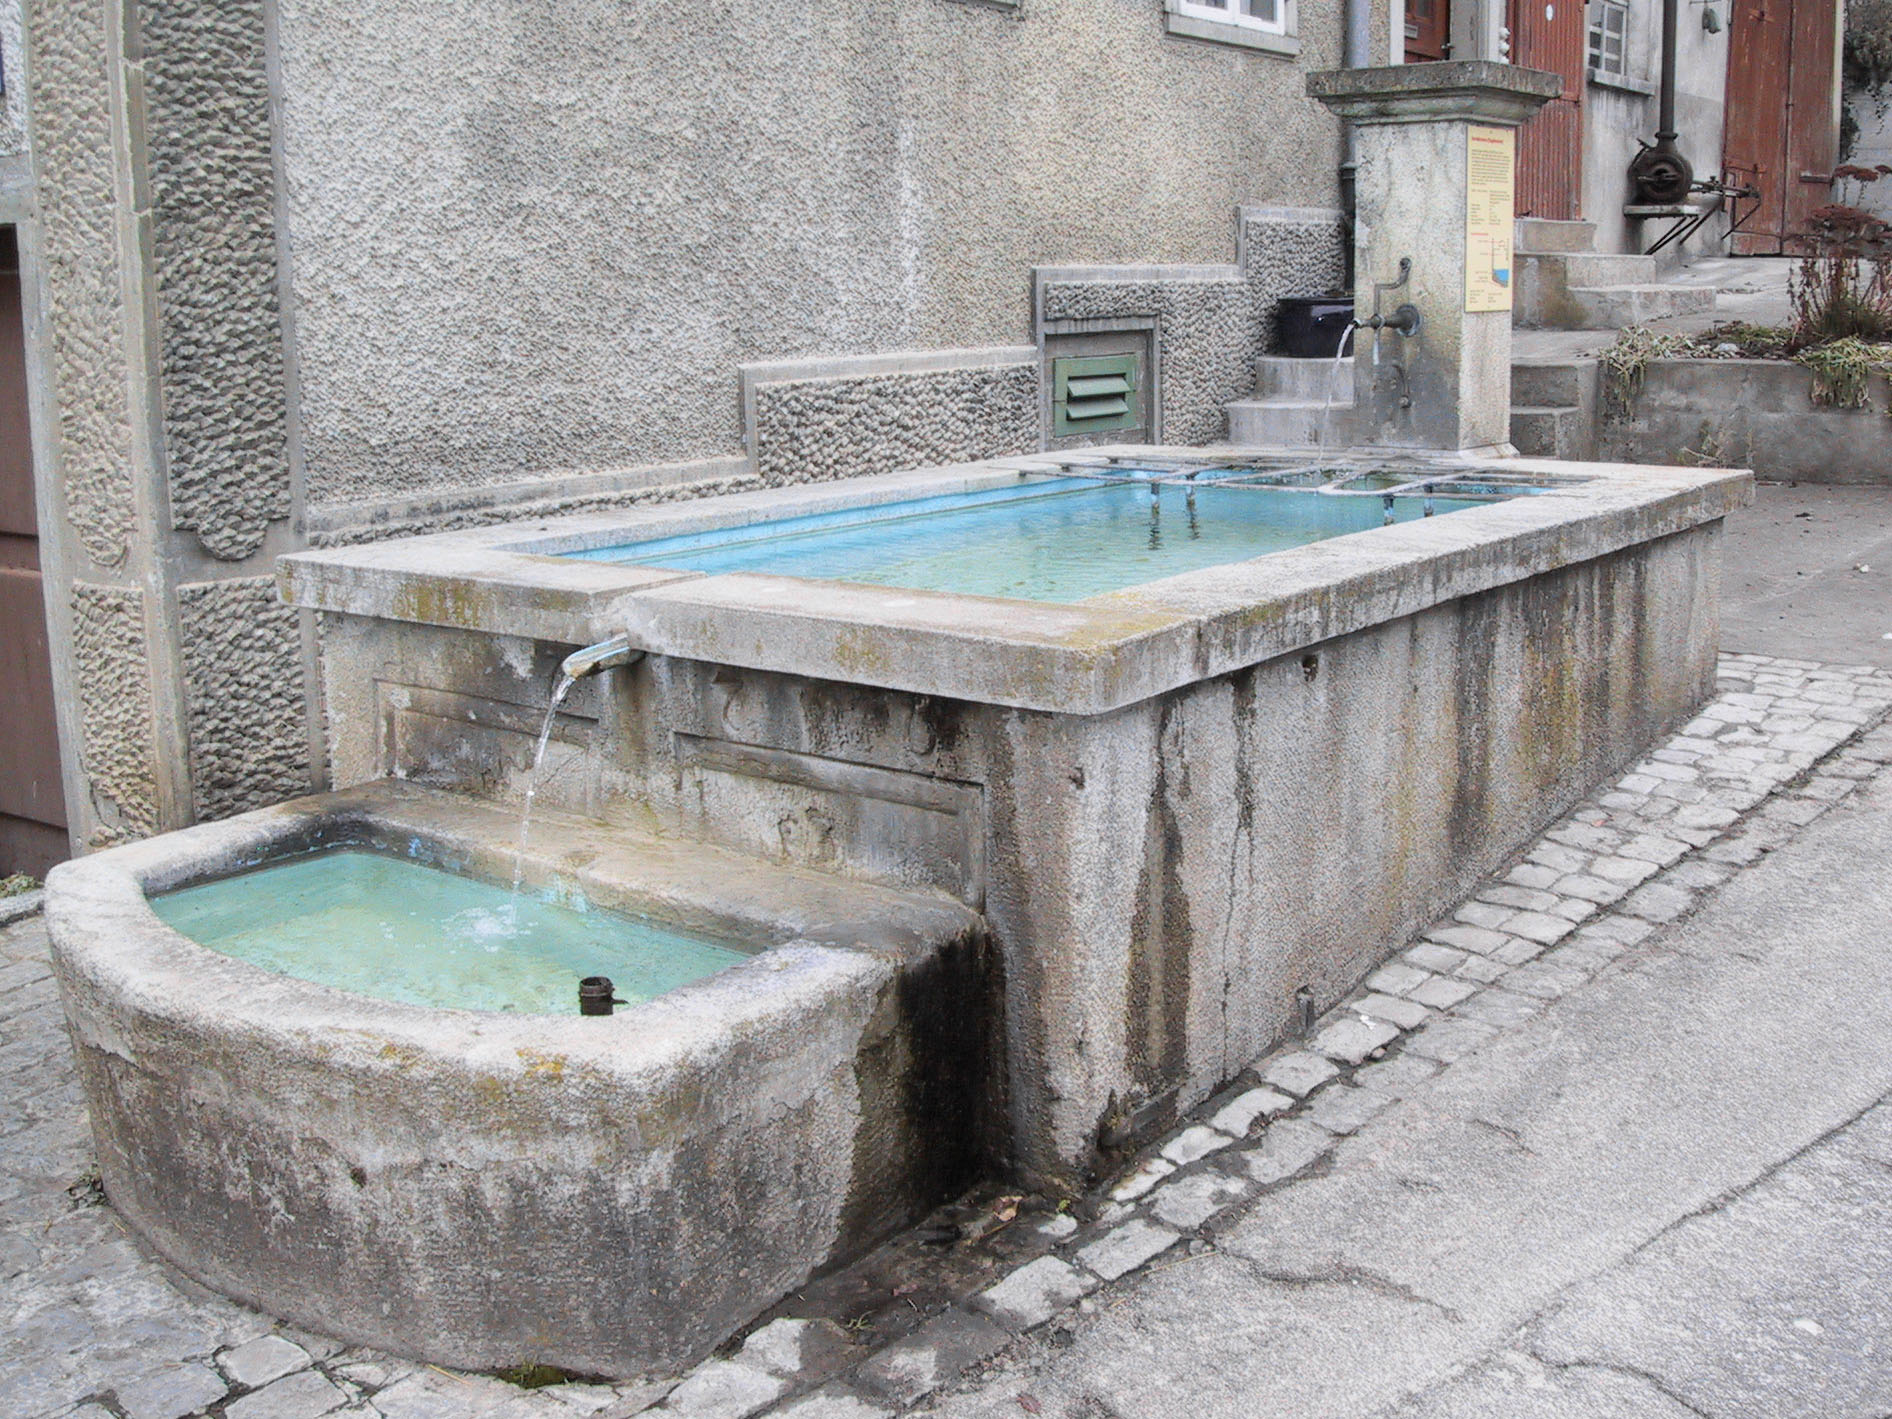 Steinbrunnen mit zwei Becken in der Stadt Zürich